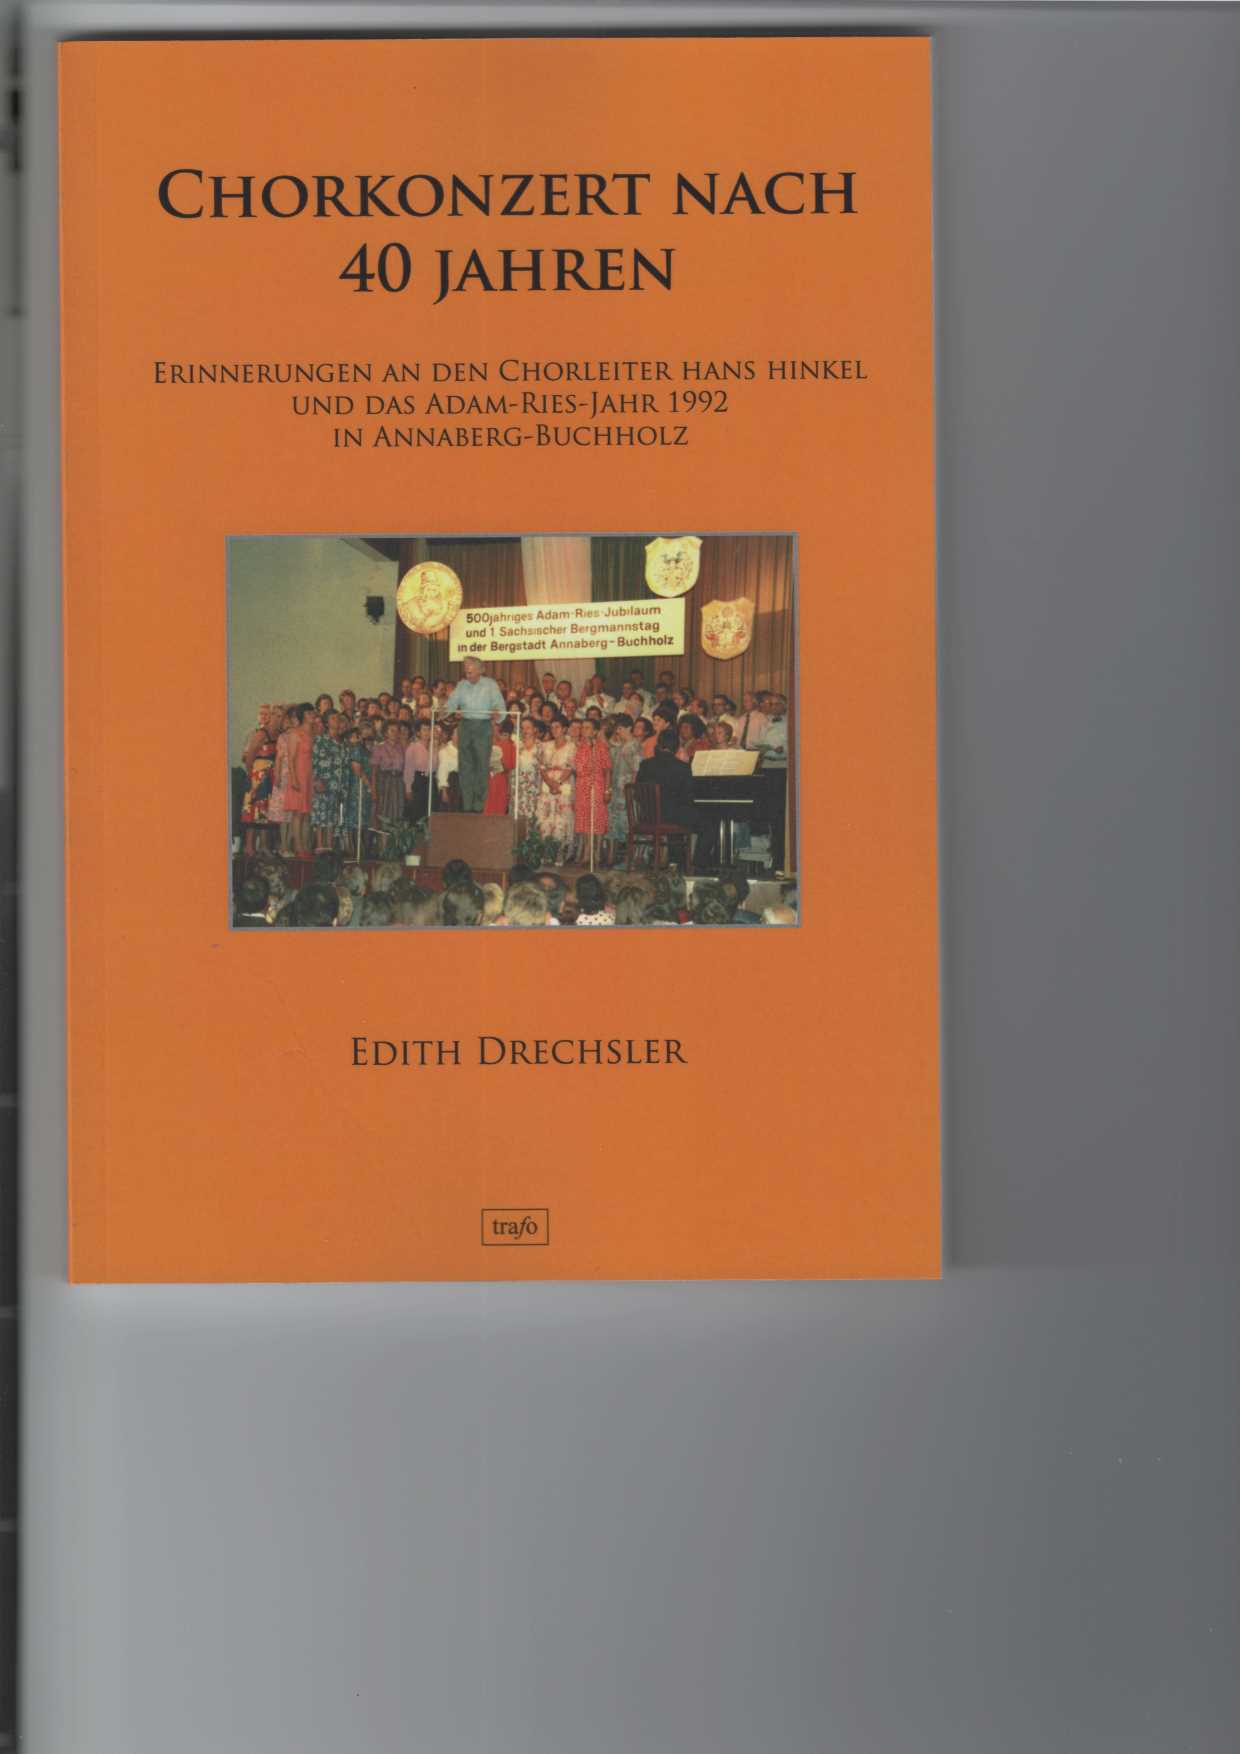 Drechsler, Edith:  Chorkonzert nach 40 Jahren - Erinnerungen an den Chorleiter Hans Hinkel und das Adam-Ries-Jahr 1992 in Annaberg-Buchholz. 